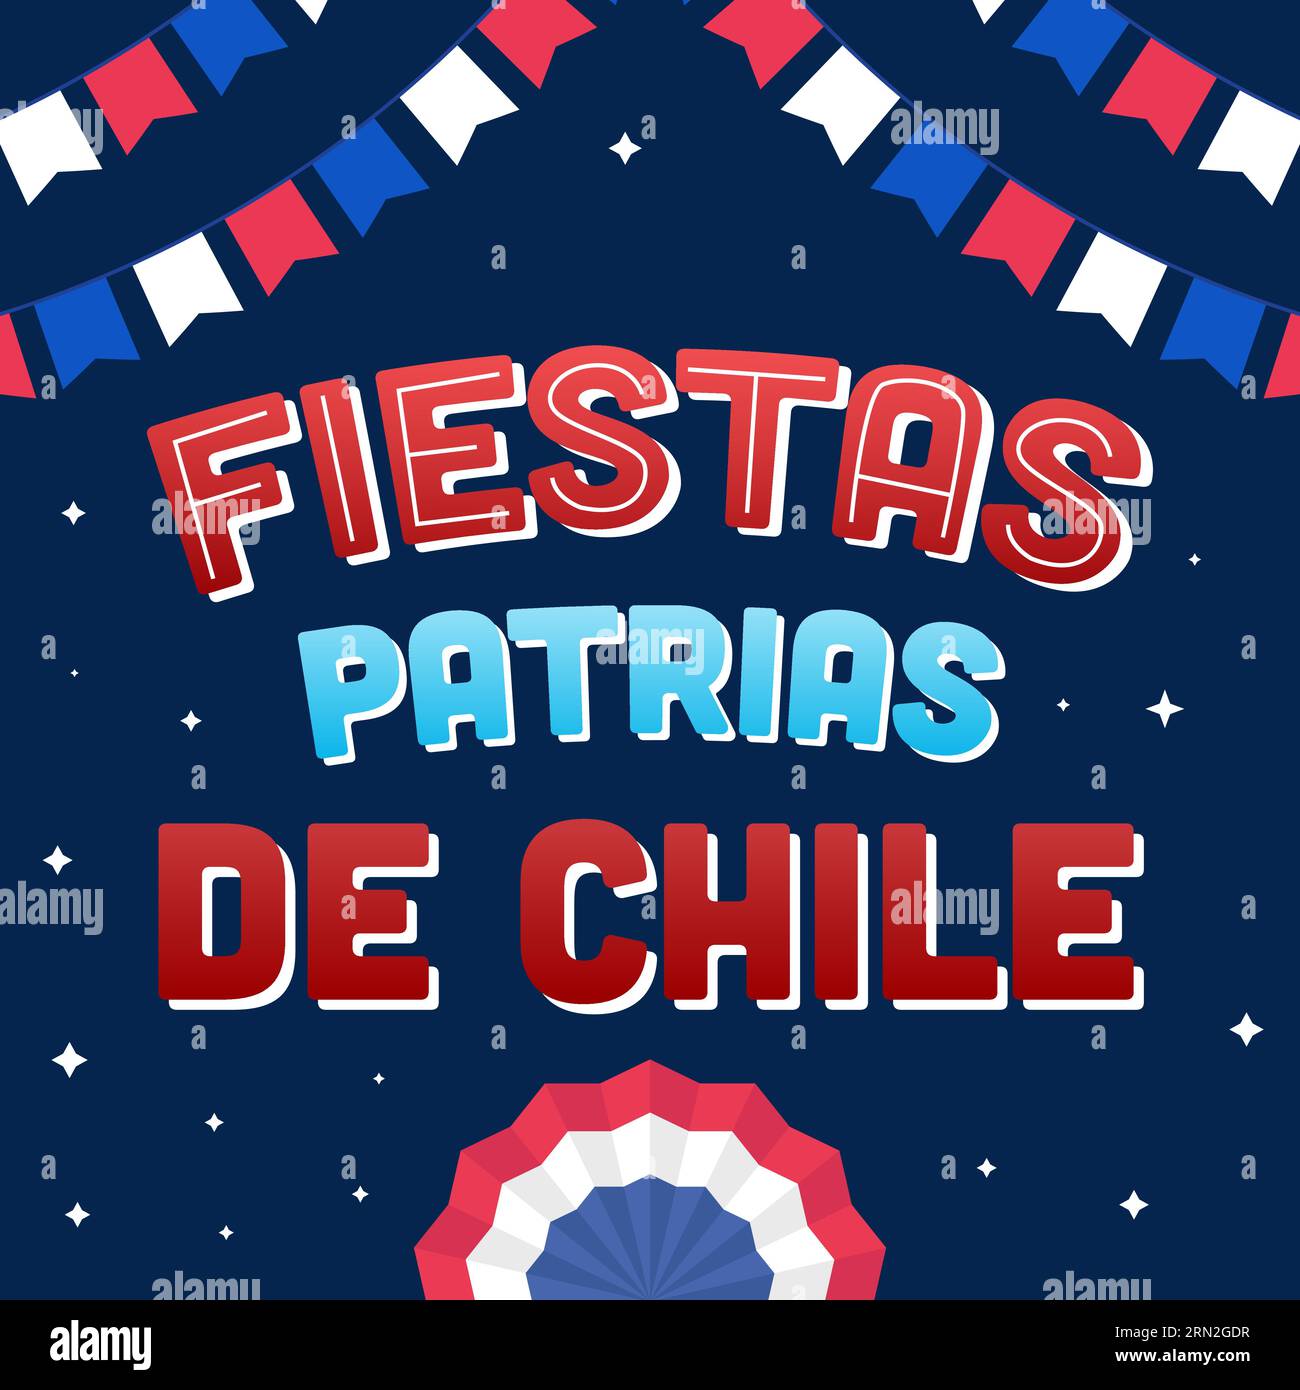 fiestas patrias de chile illustration design in gradient Stock Vector